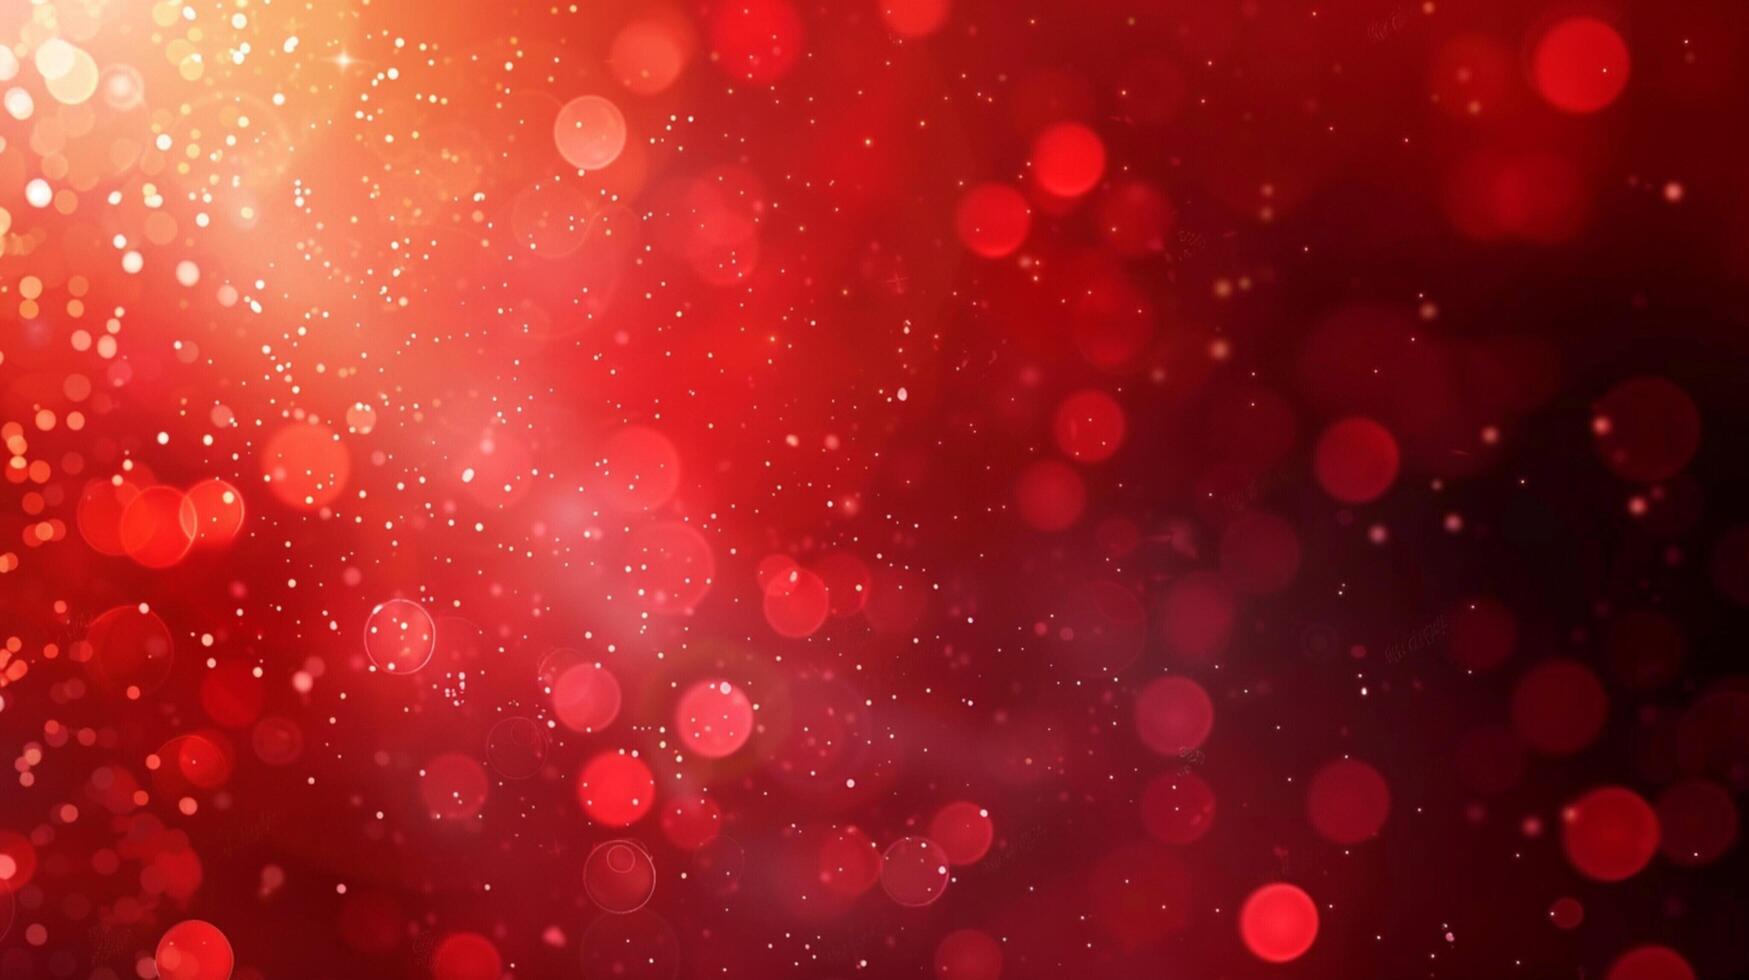 abstrakt röd bakgrund jul valentines foto